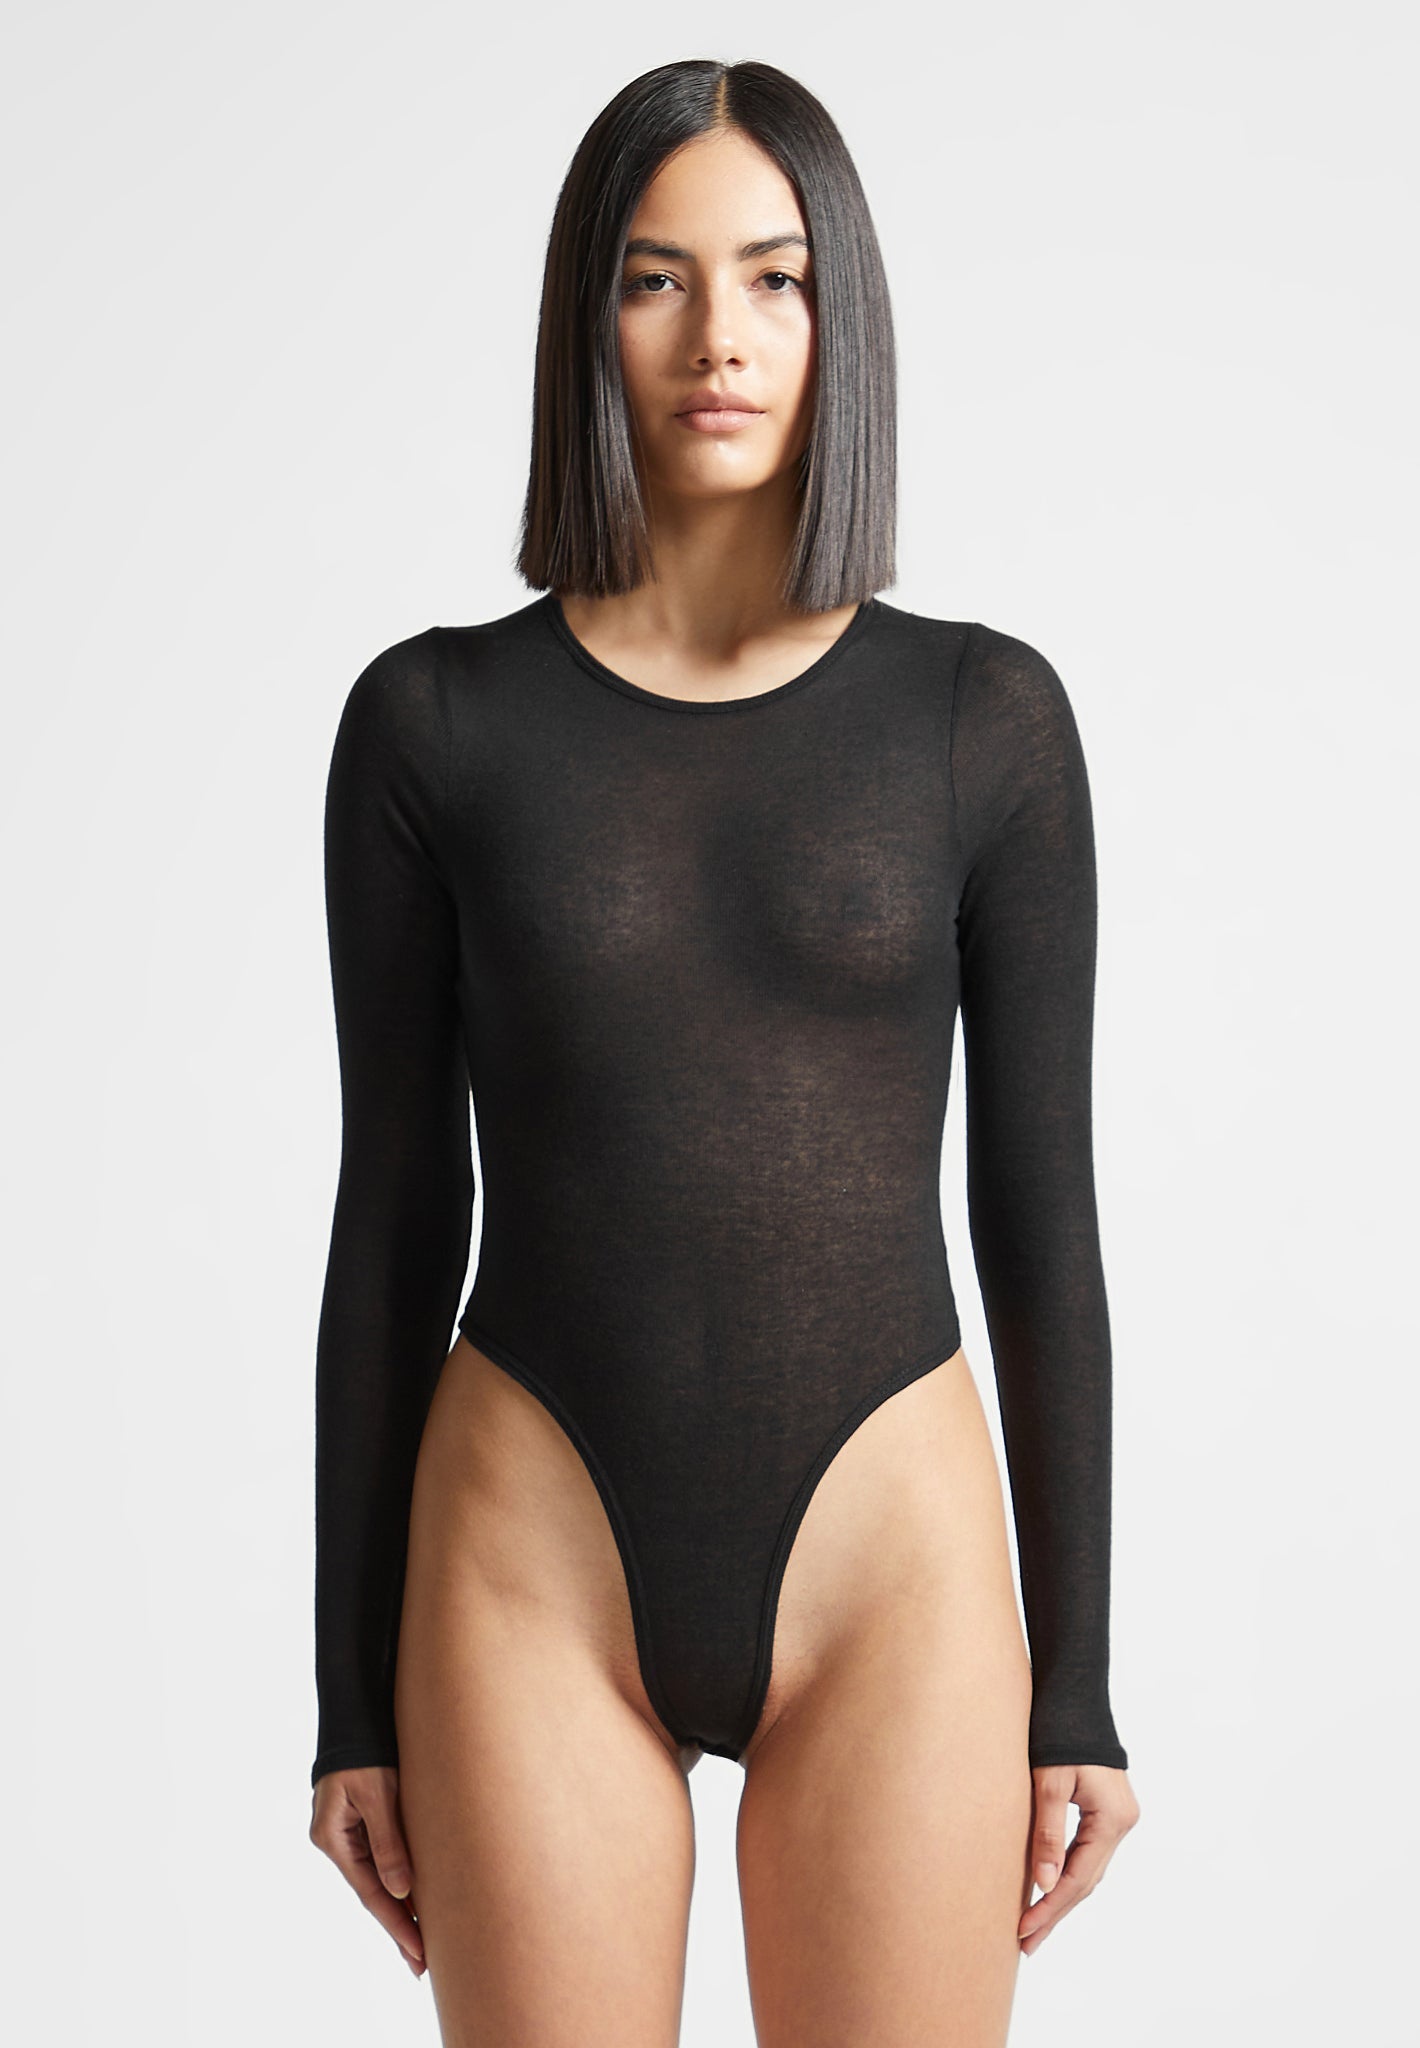 https://us.manieredevoir.com/cdn/shop/files/Eternelle-Sheer-Long-Sleeve-Bodysuit-Black6.jpg?v=1700221863